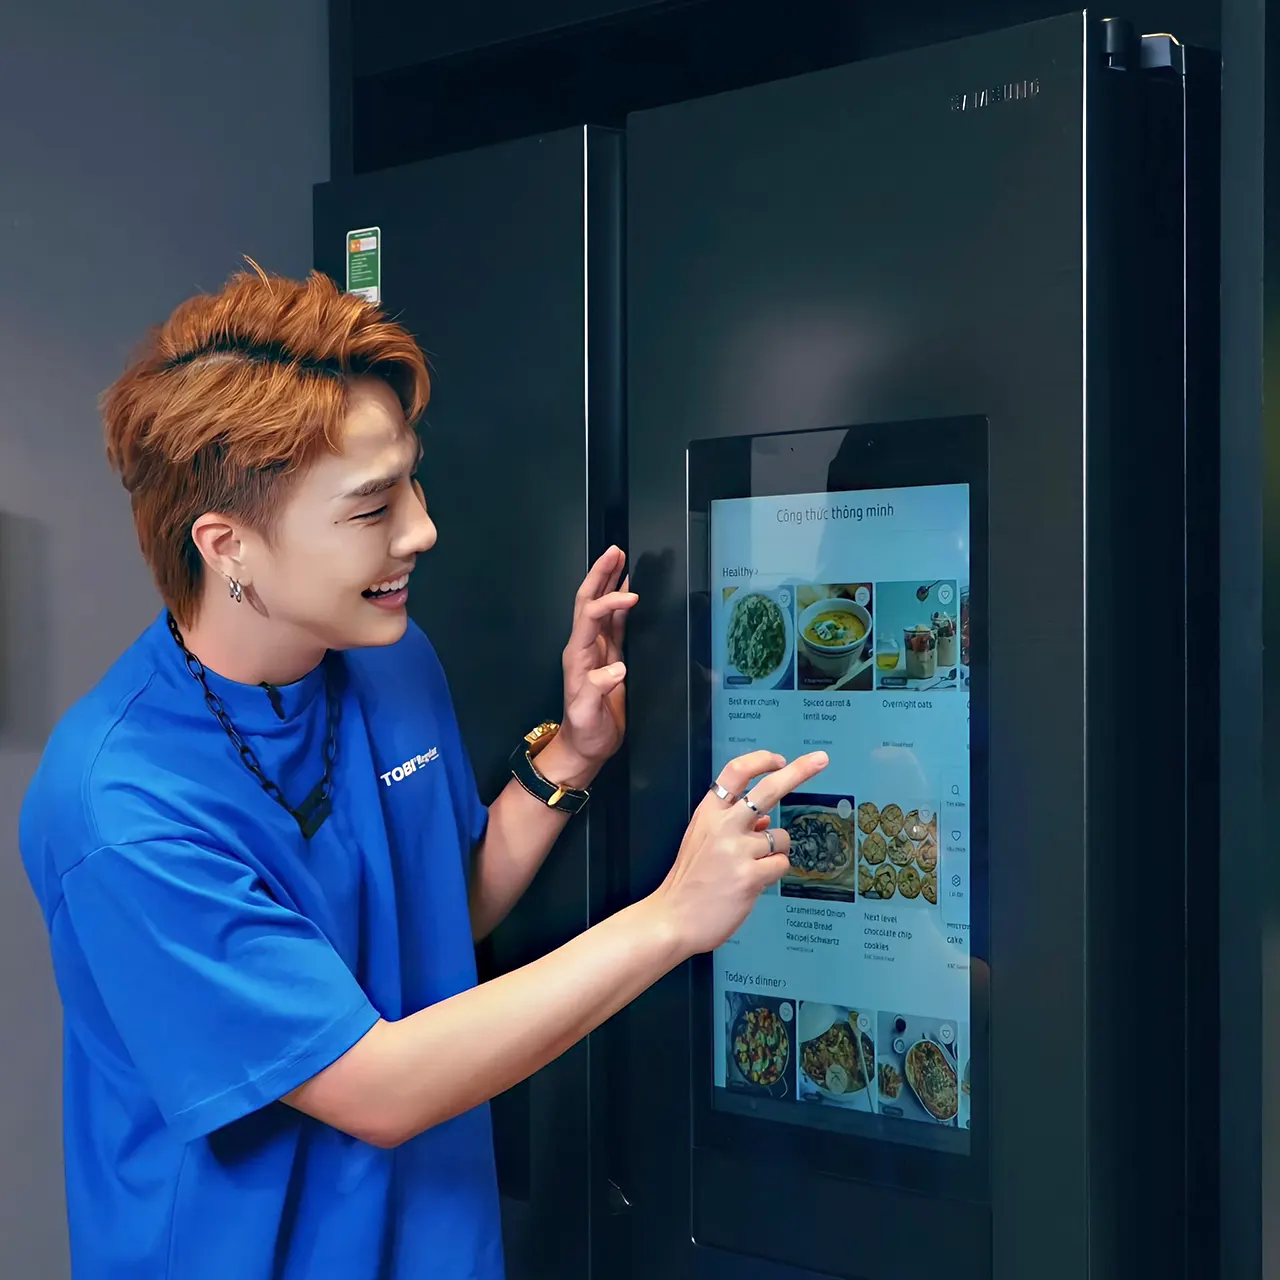 Ngàn công thức, thỏa đam mê nấu nướng cùng tủ lạnh thông minh Samsung Family Hub